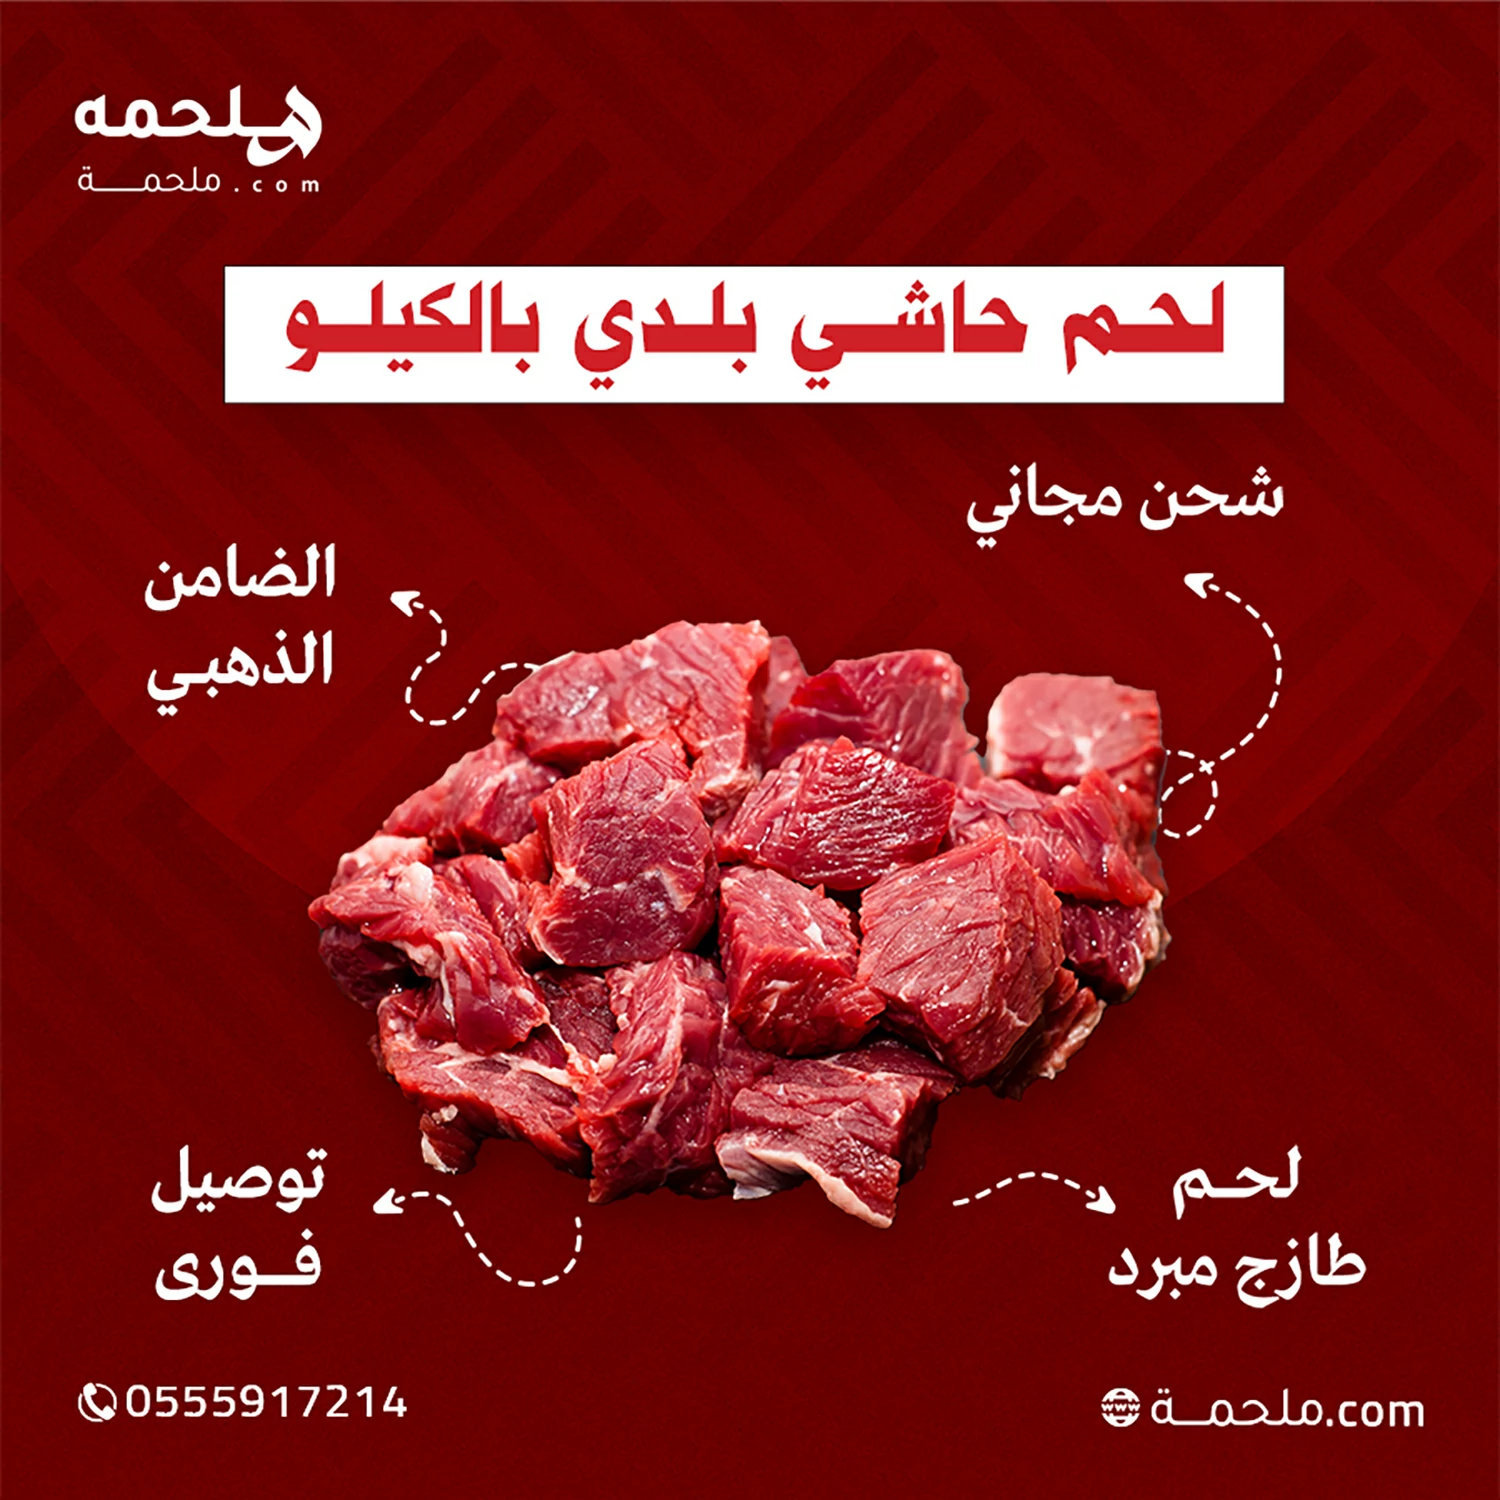 (العربية) لحم حاشي بلدي بالكيلو